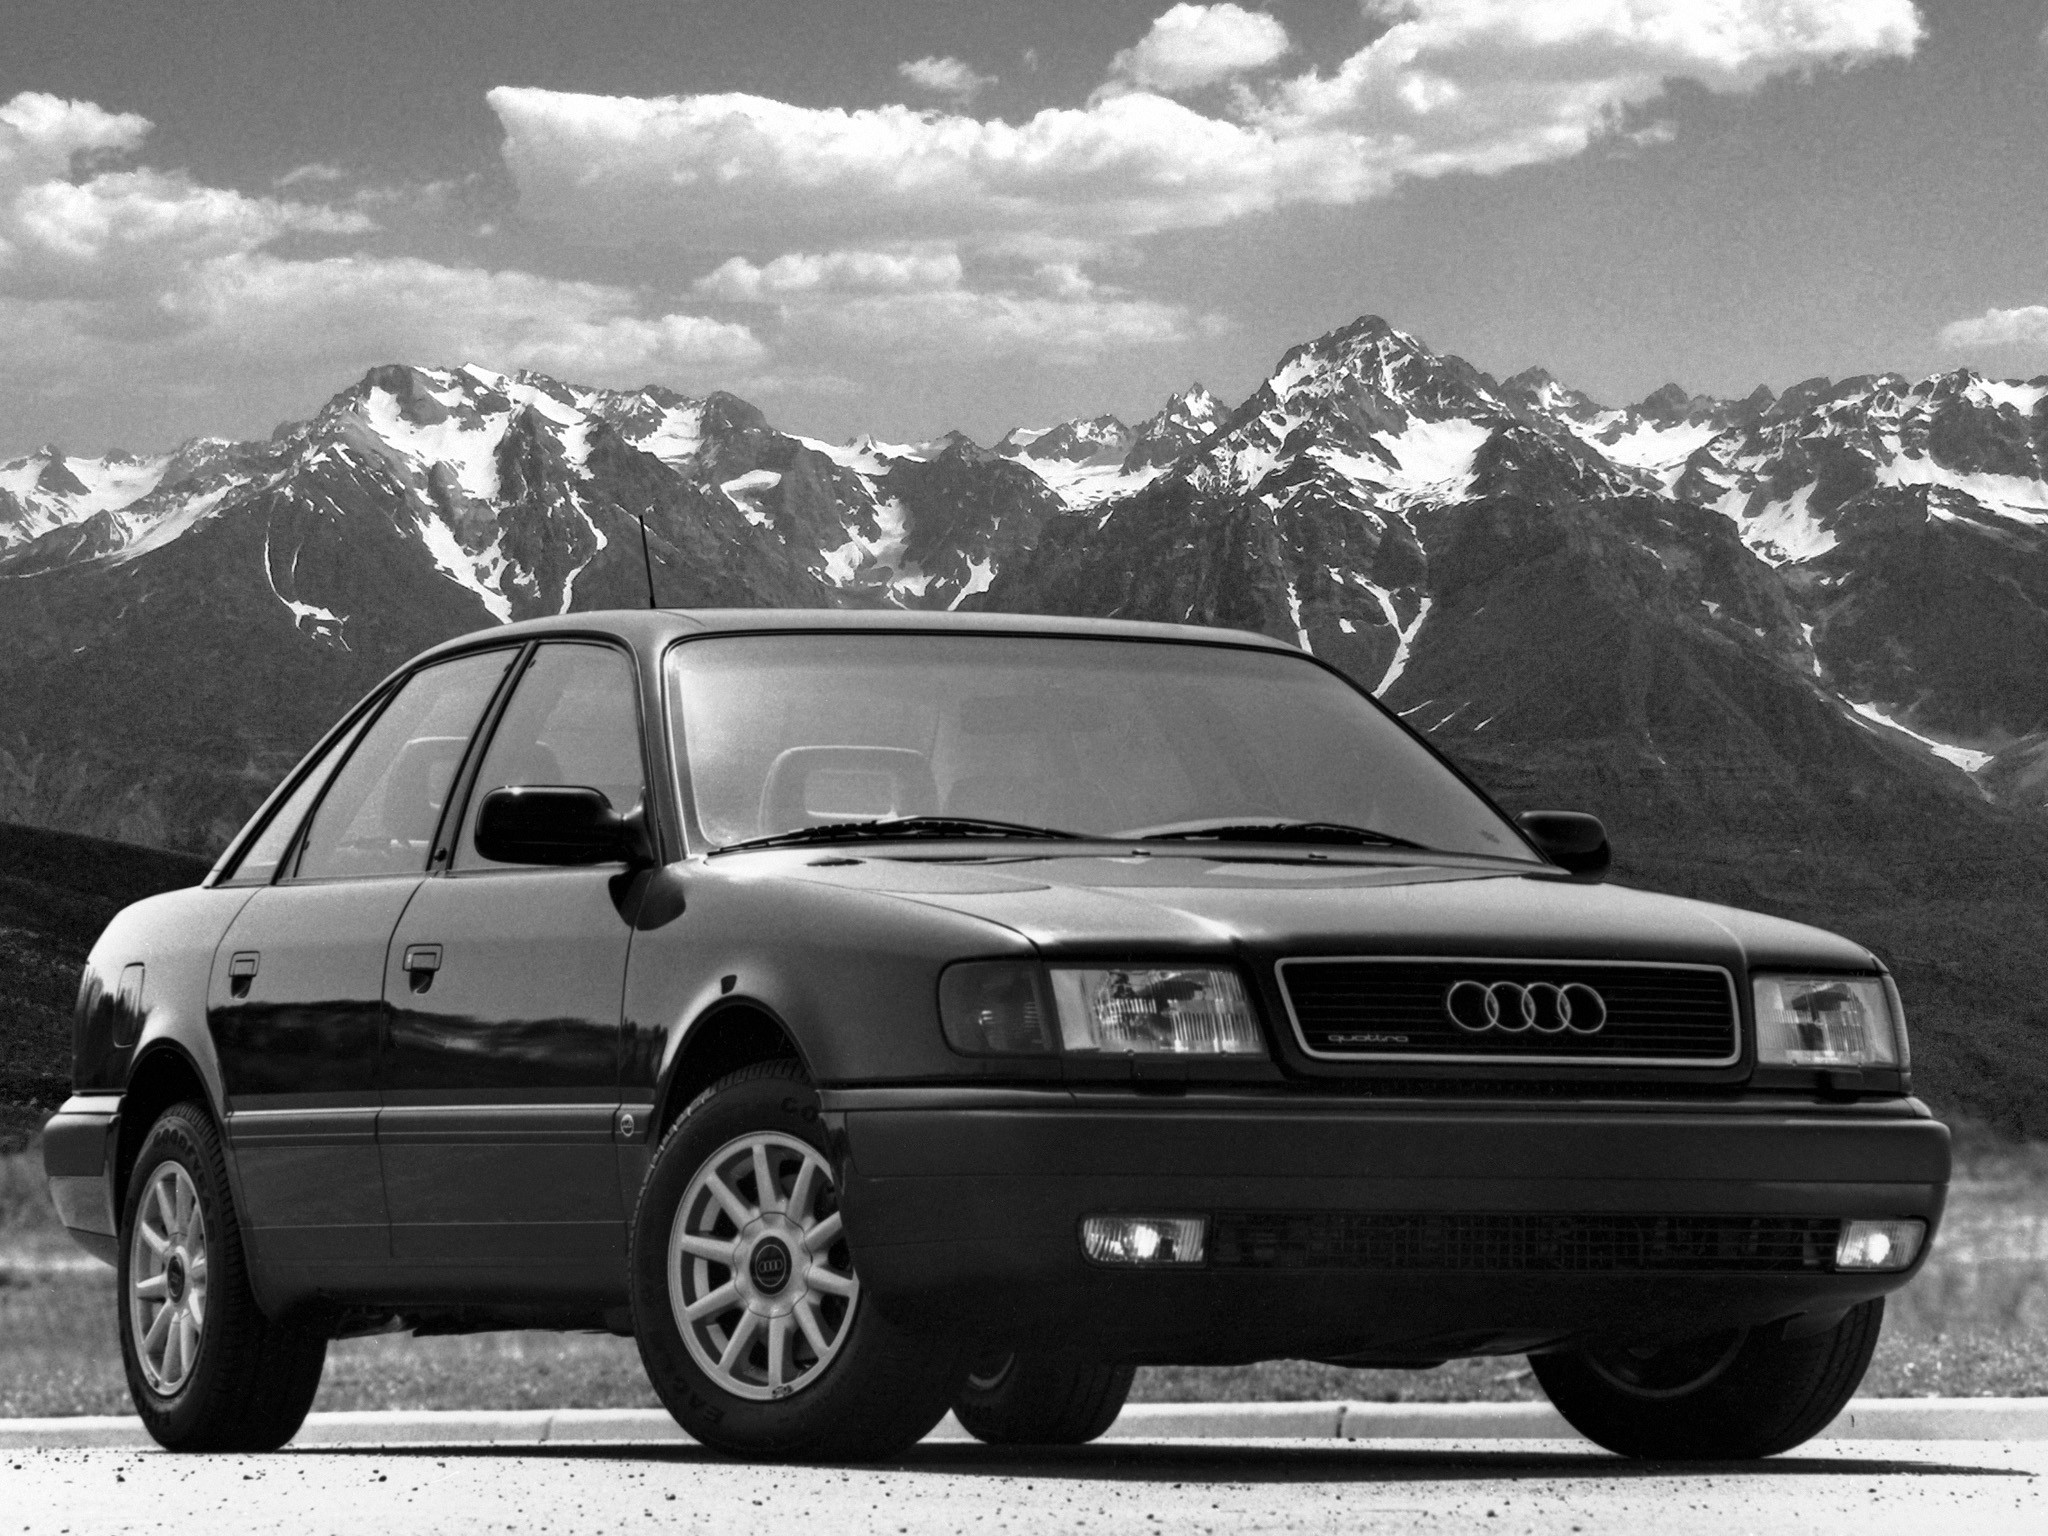 Двигатели Audi 100 C4 – достоинства и недостатки фото